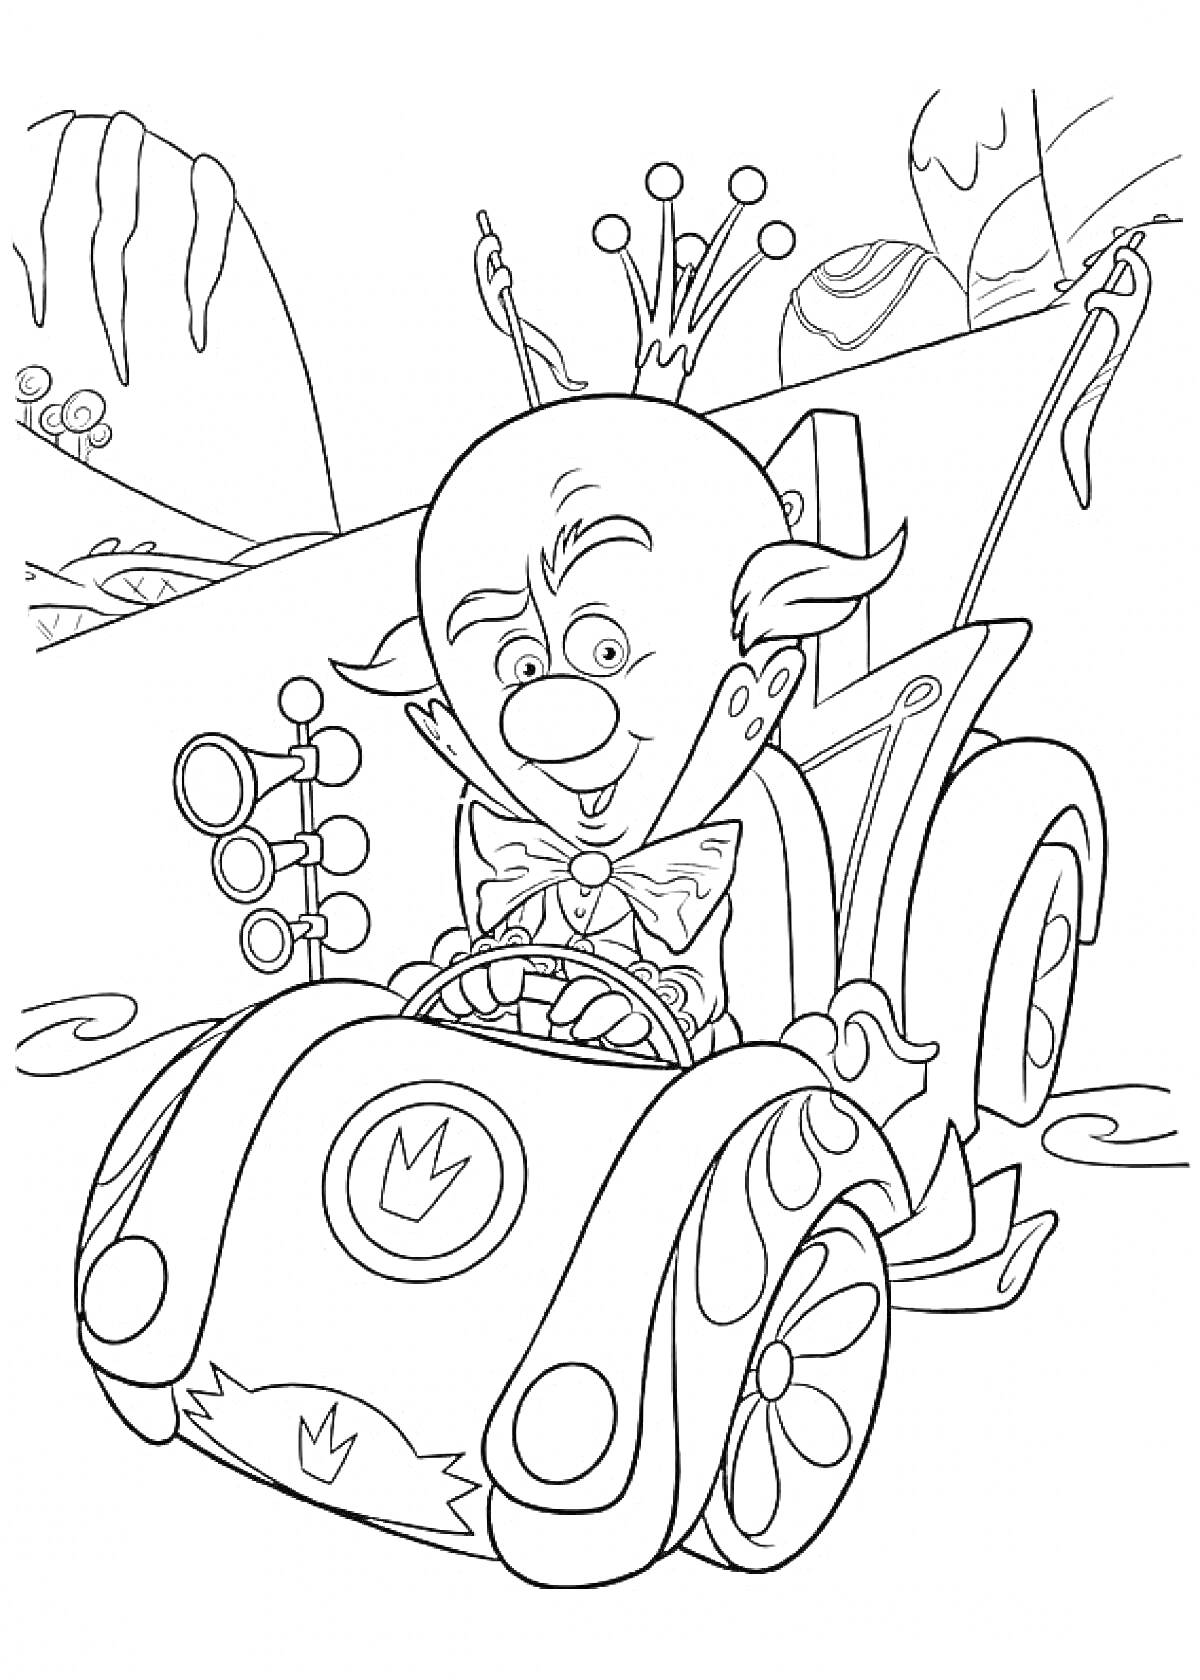 Клоун в короне едет на автомобиле с эмблемой короны